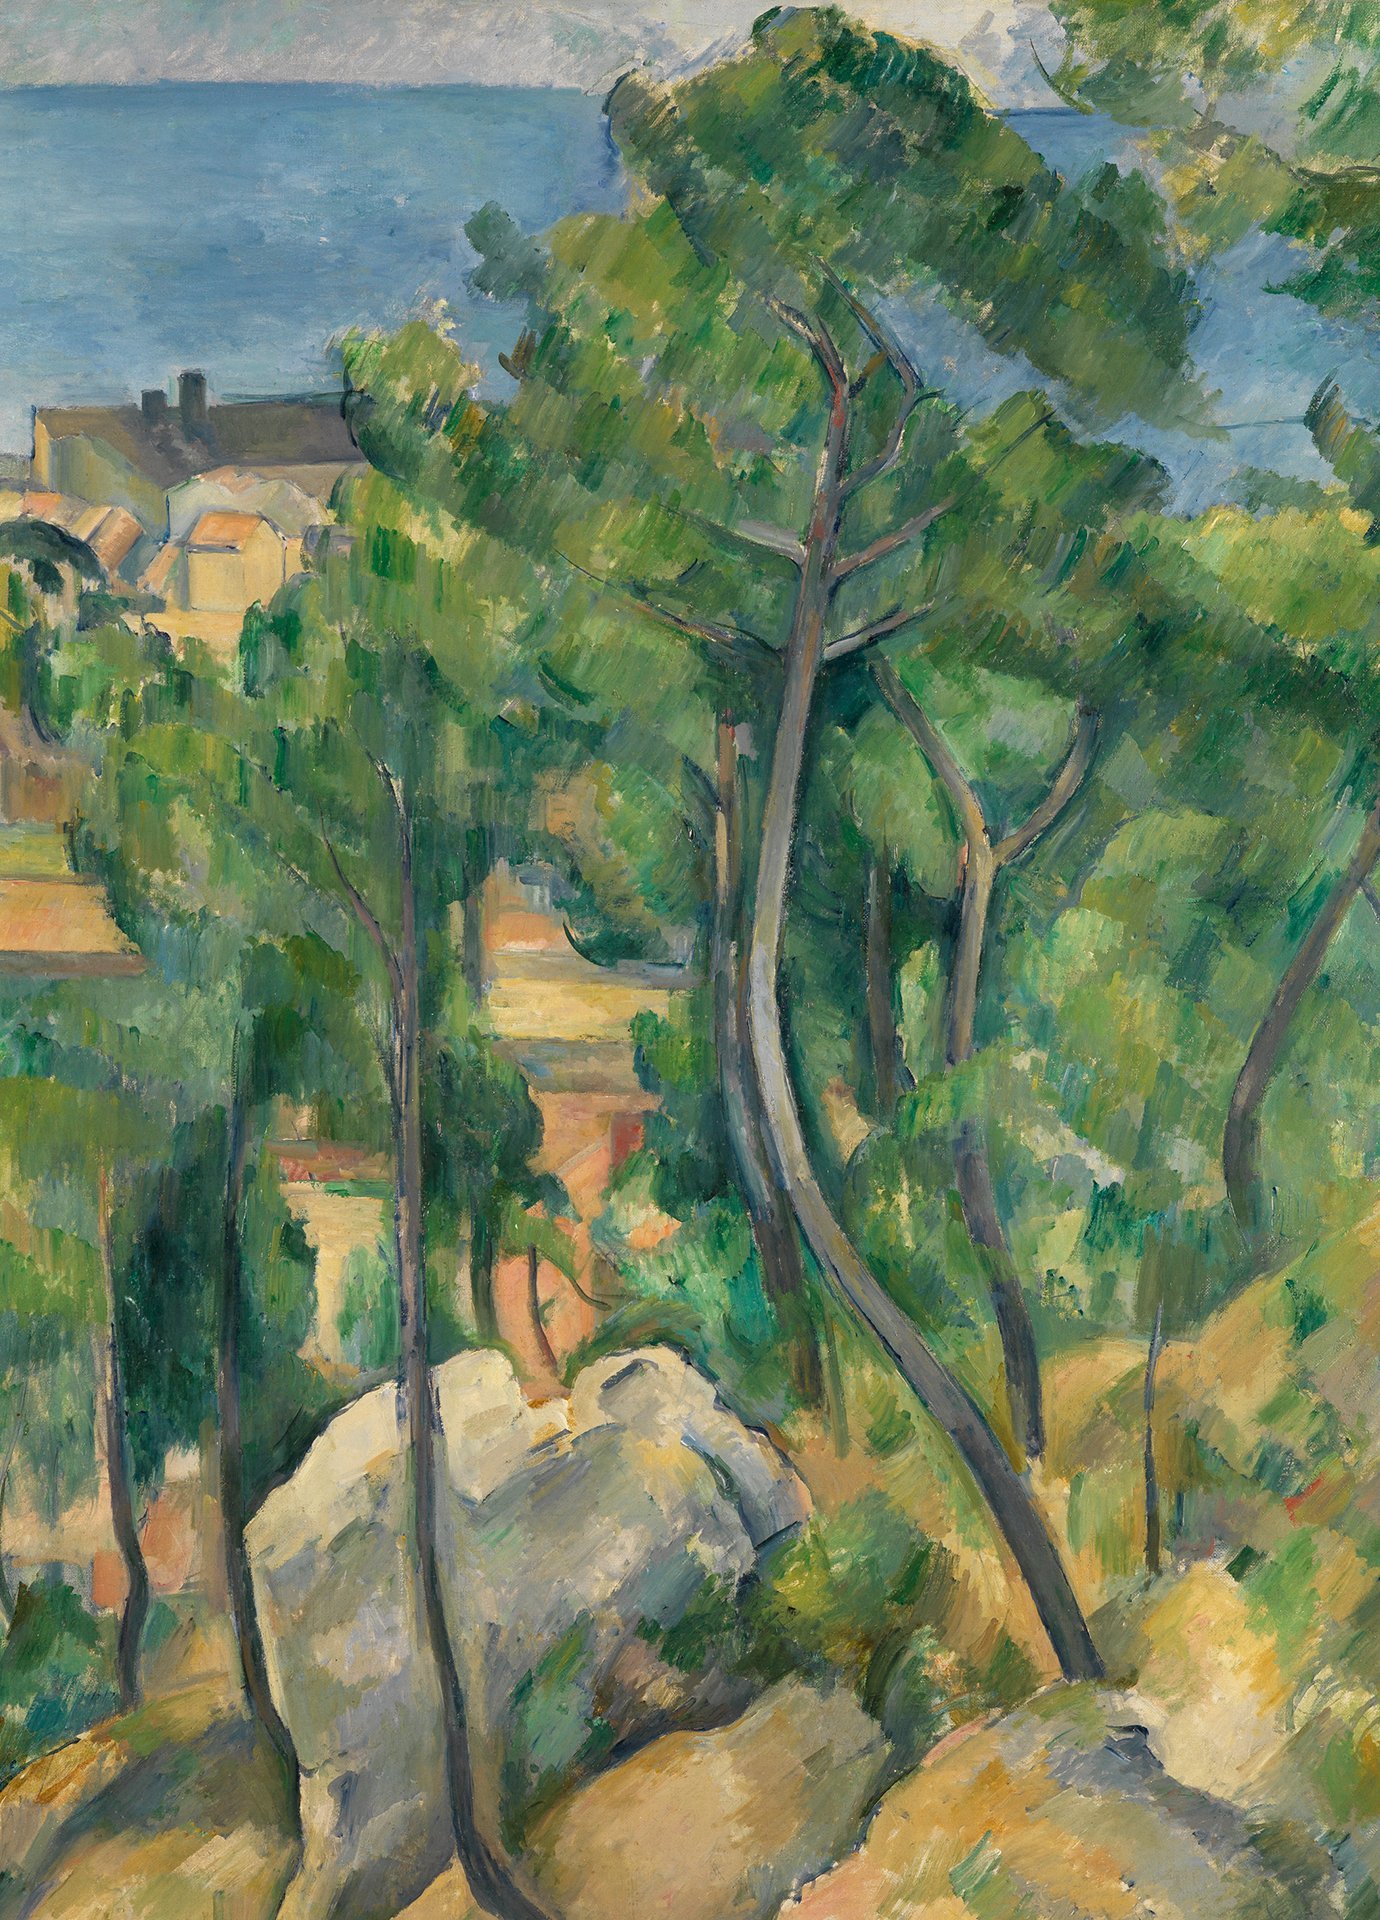 Abbildung des Werks Blick auf das Meer bei L'Estaque von Paul Cézanne aus der Sammlung der Kunsthalle Karlsruhe. Man sieht im Vordergrund Bäume und im Hintergrund eine Siedlung.